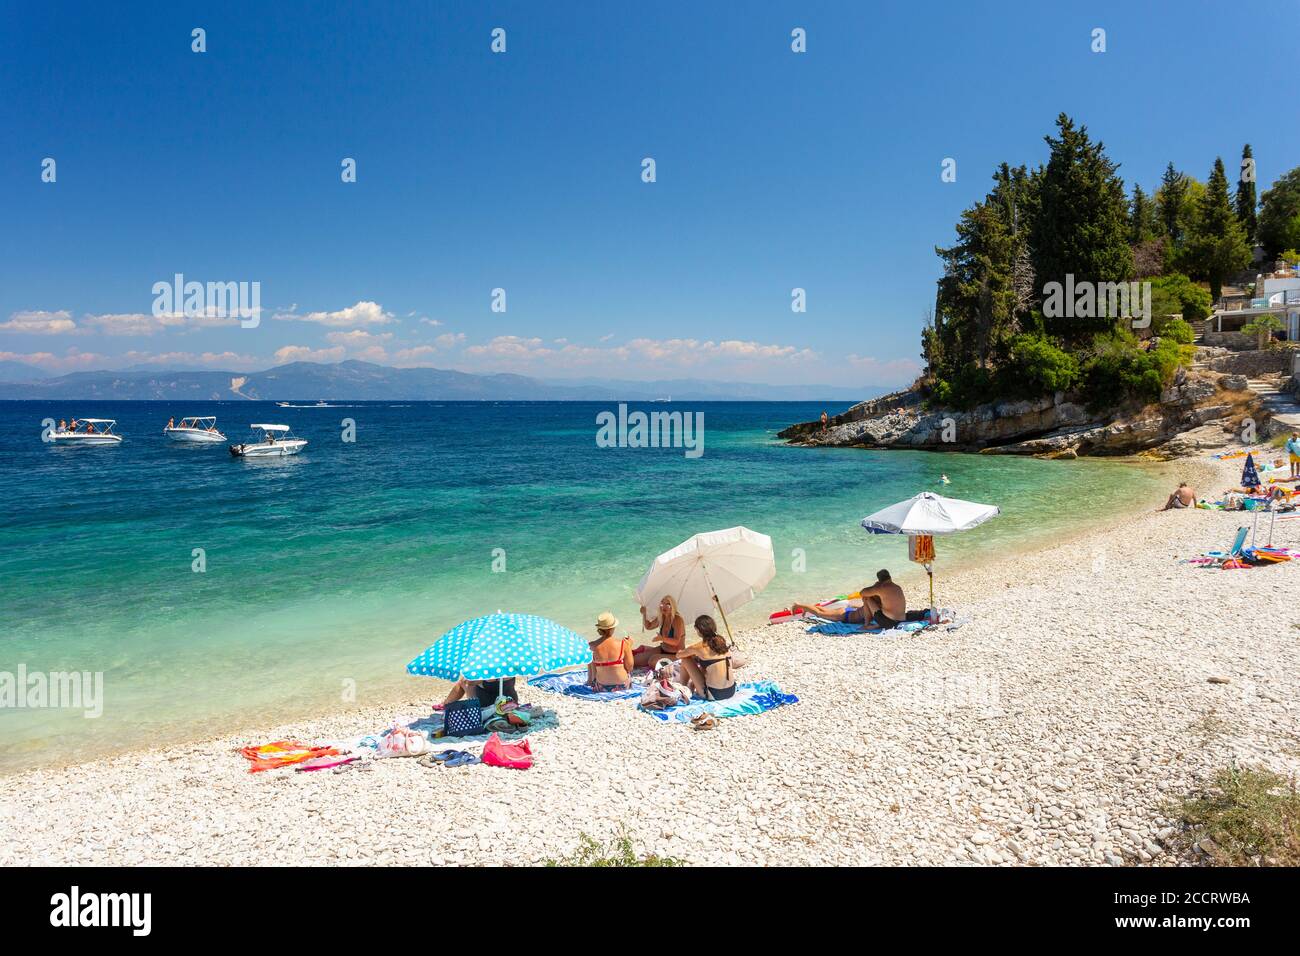 Gente que se relaja en la playa de Levrechio, Paxos, Islas Jónicas, Grecia Foto de stock